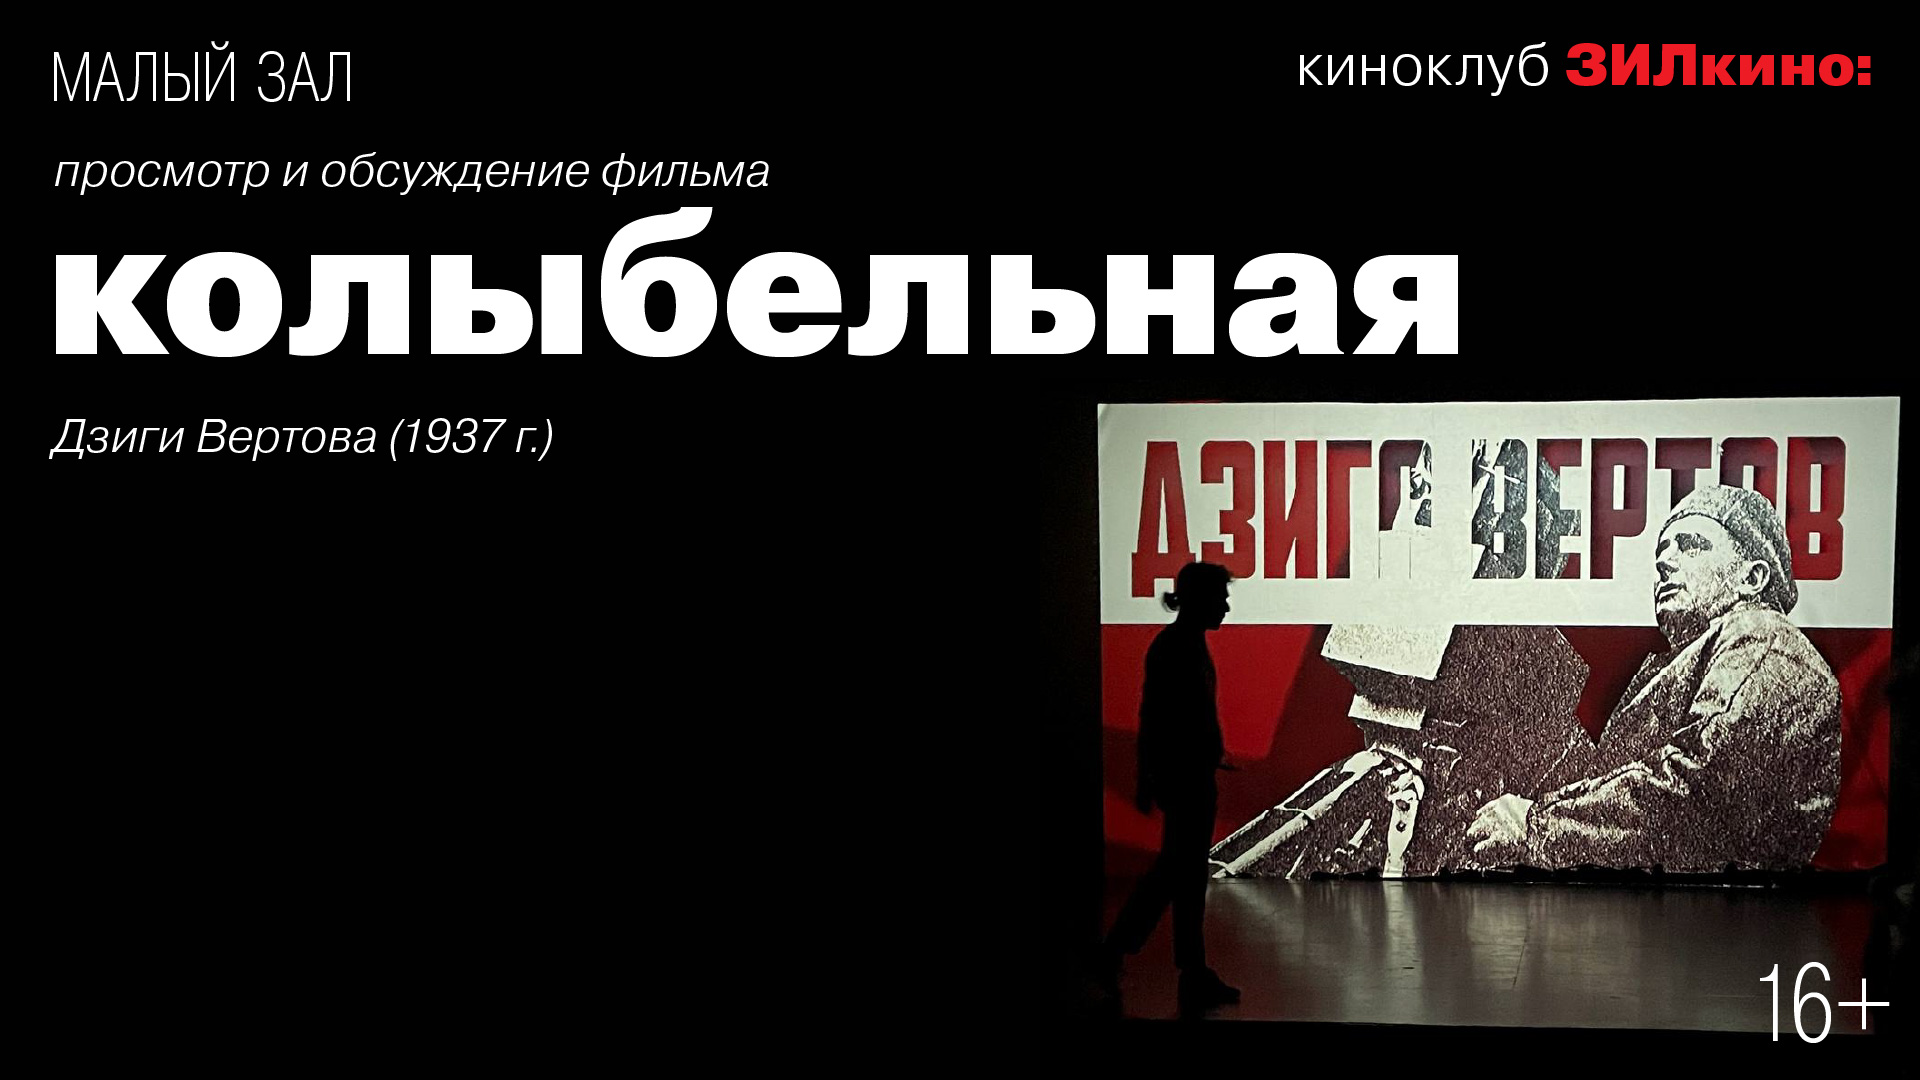 Киноклуб ЗИЛкино: Просмотр и обсуждение фильма «Колыбельная» Дзиги Вертова (1938 г.)